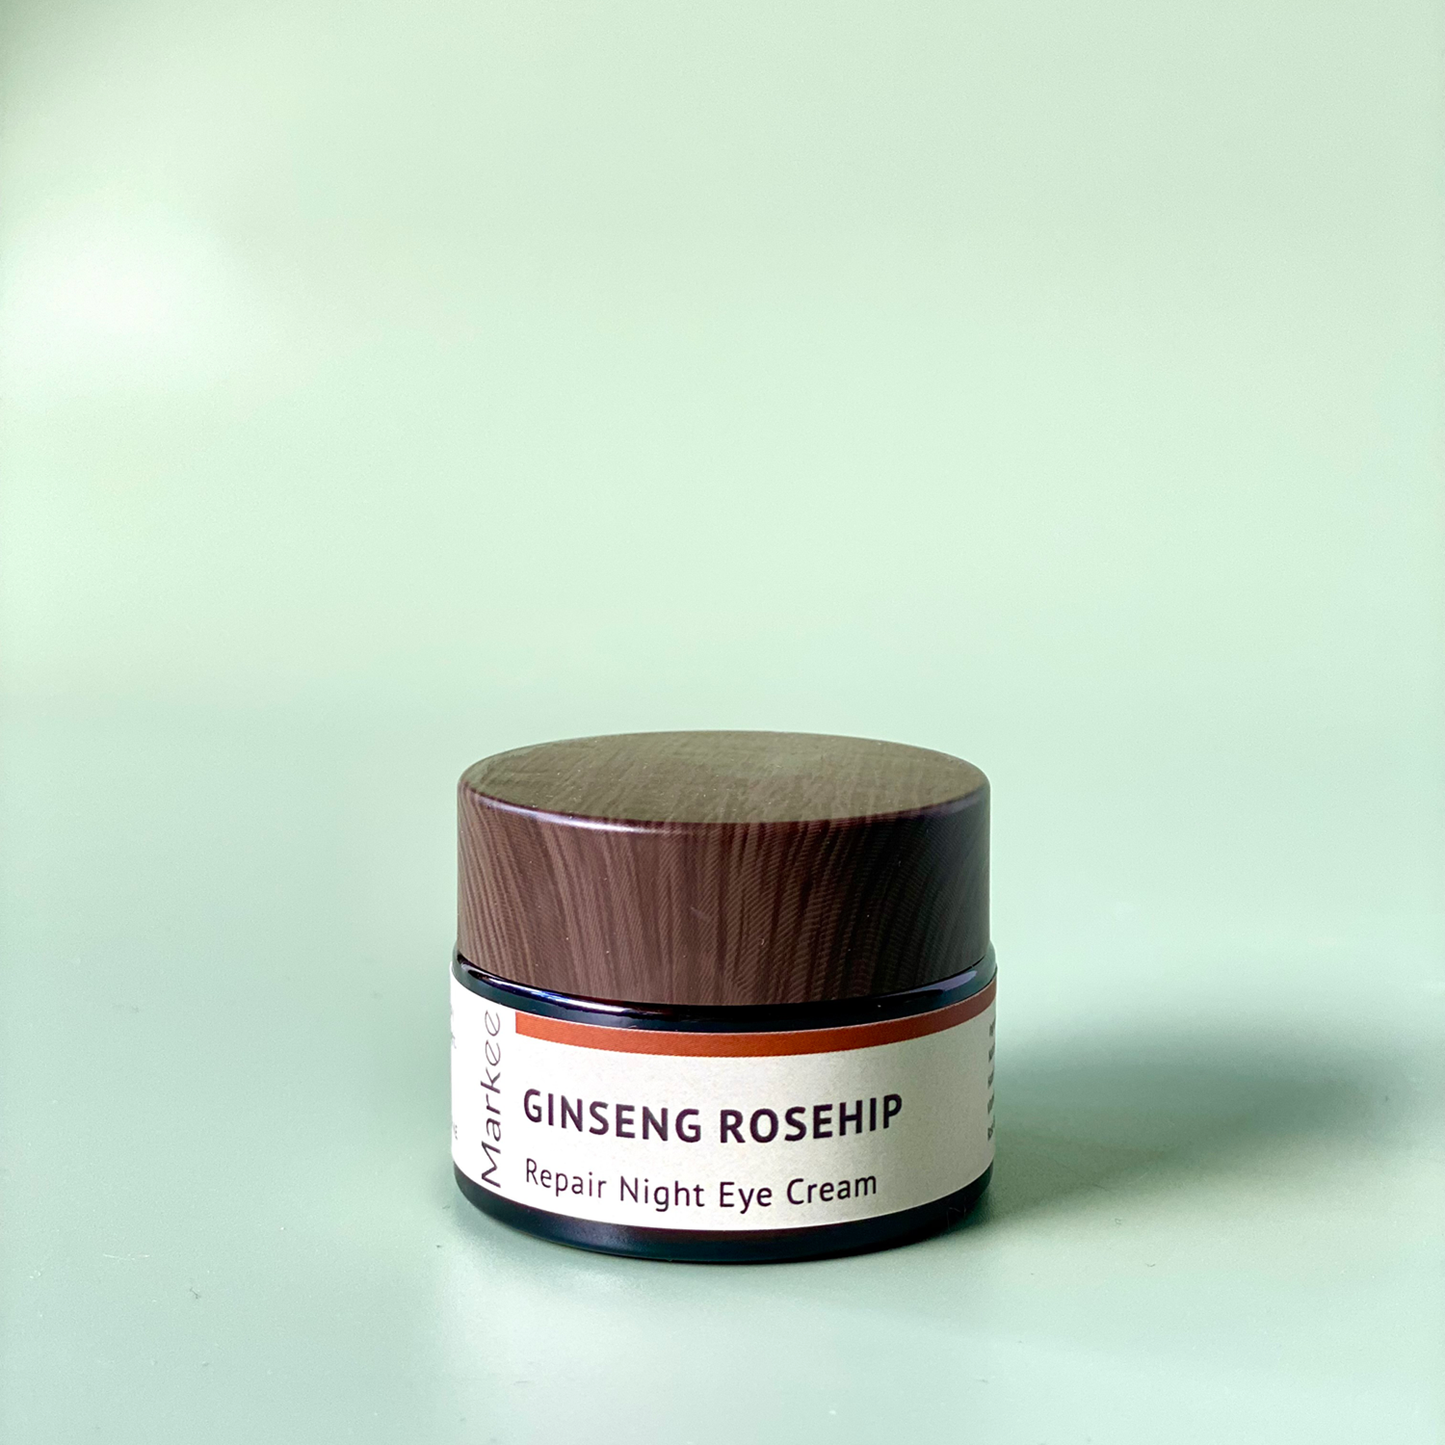 Ginseng Rosehip Repair Night Eye Cream